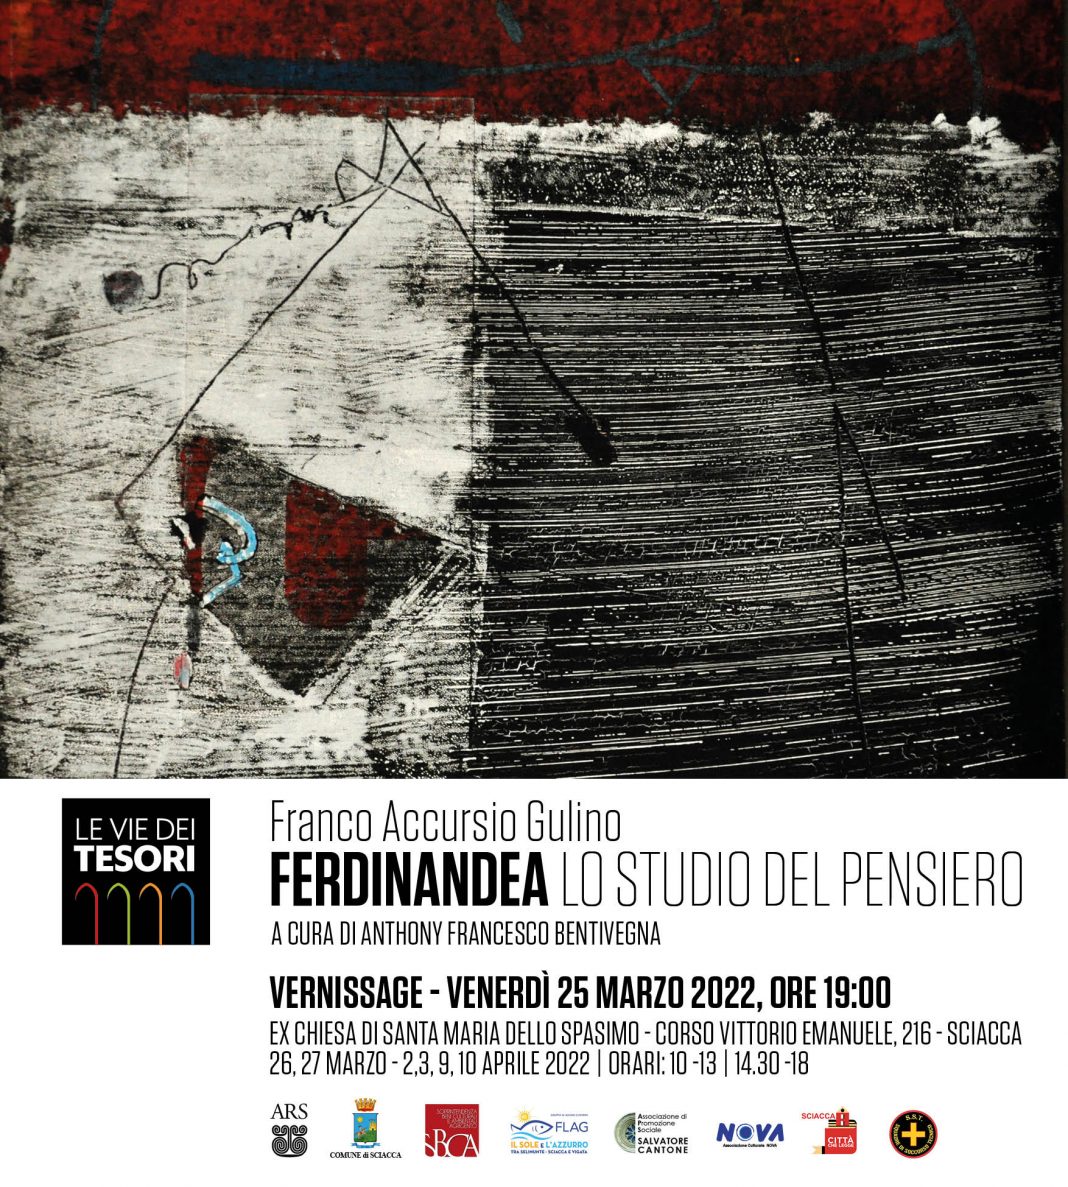 Franco Accursio Gulino – Ferdinandea. Lo studio del pensierohttps://www.exibart.com/repository/media/formidable/11/img/4a0/invito-digitale-1068x1187.jpg